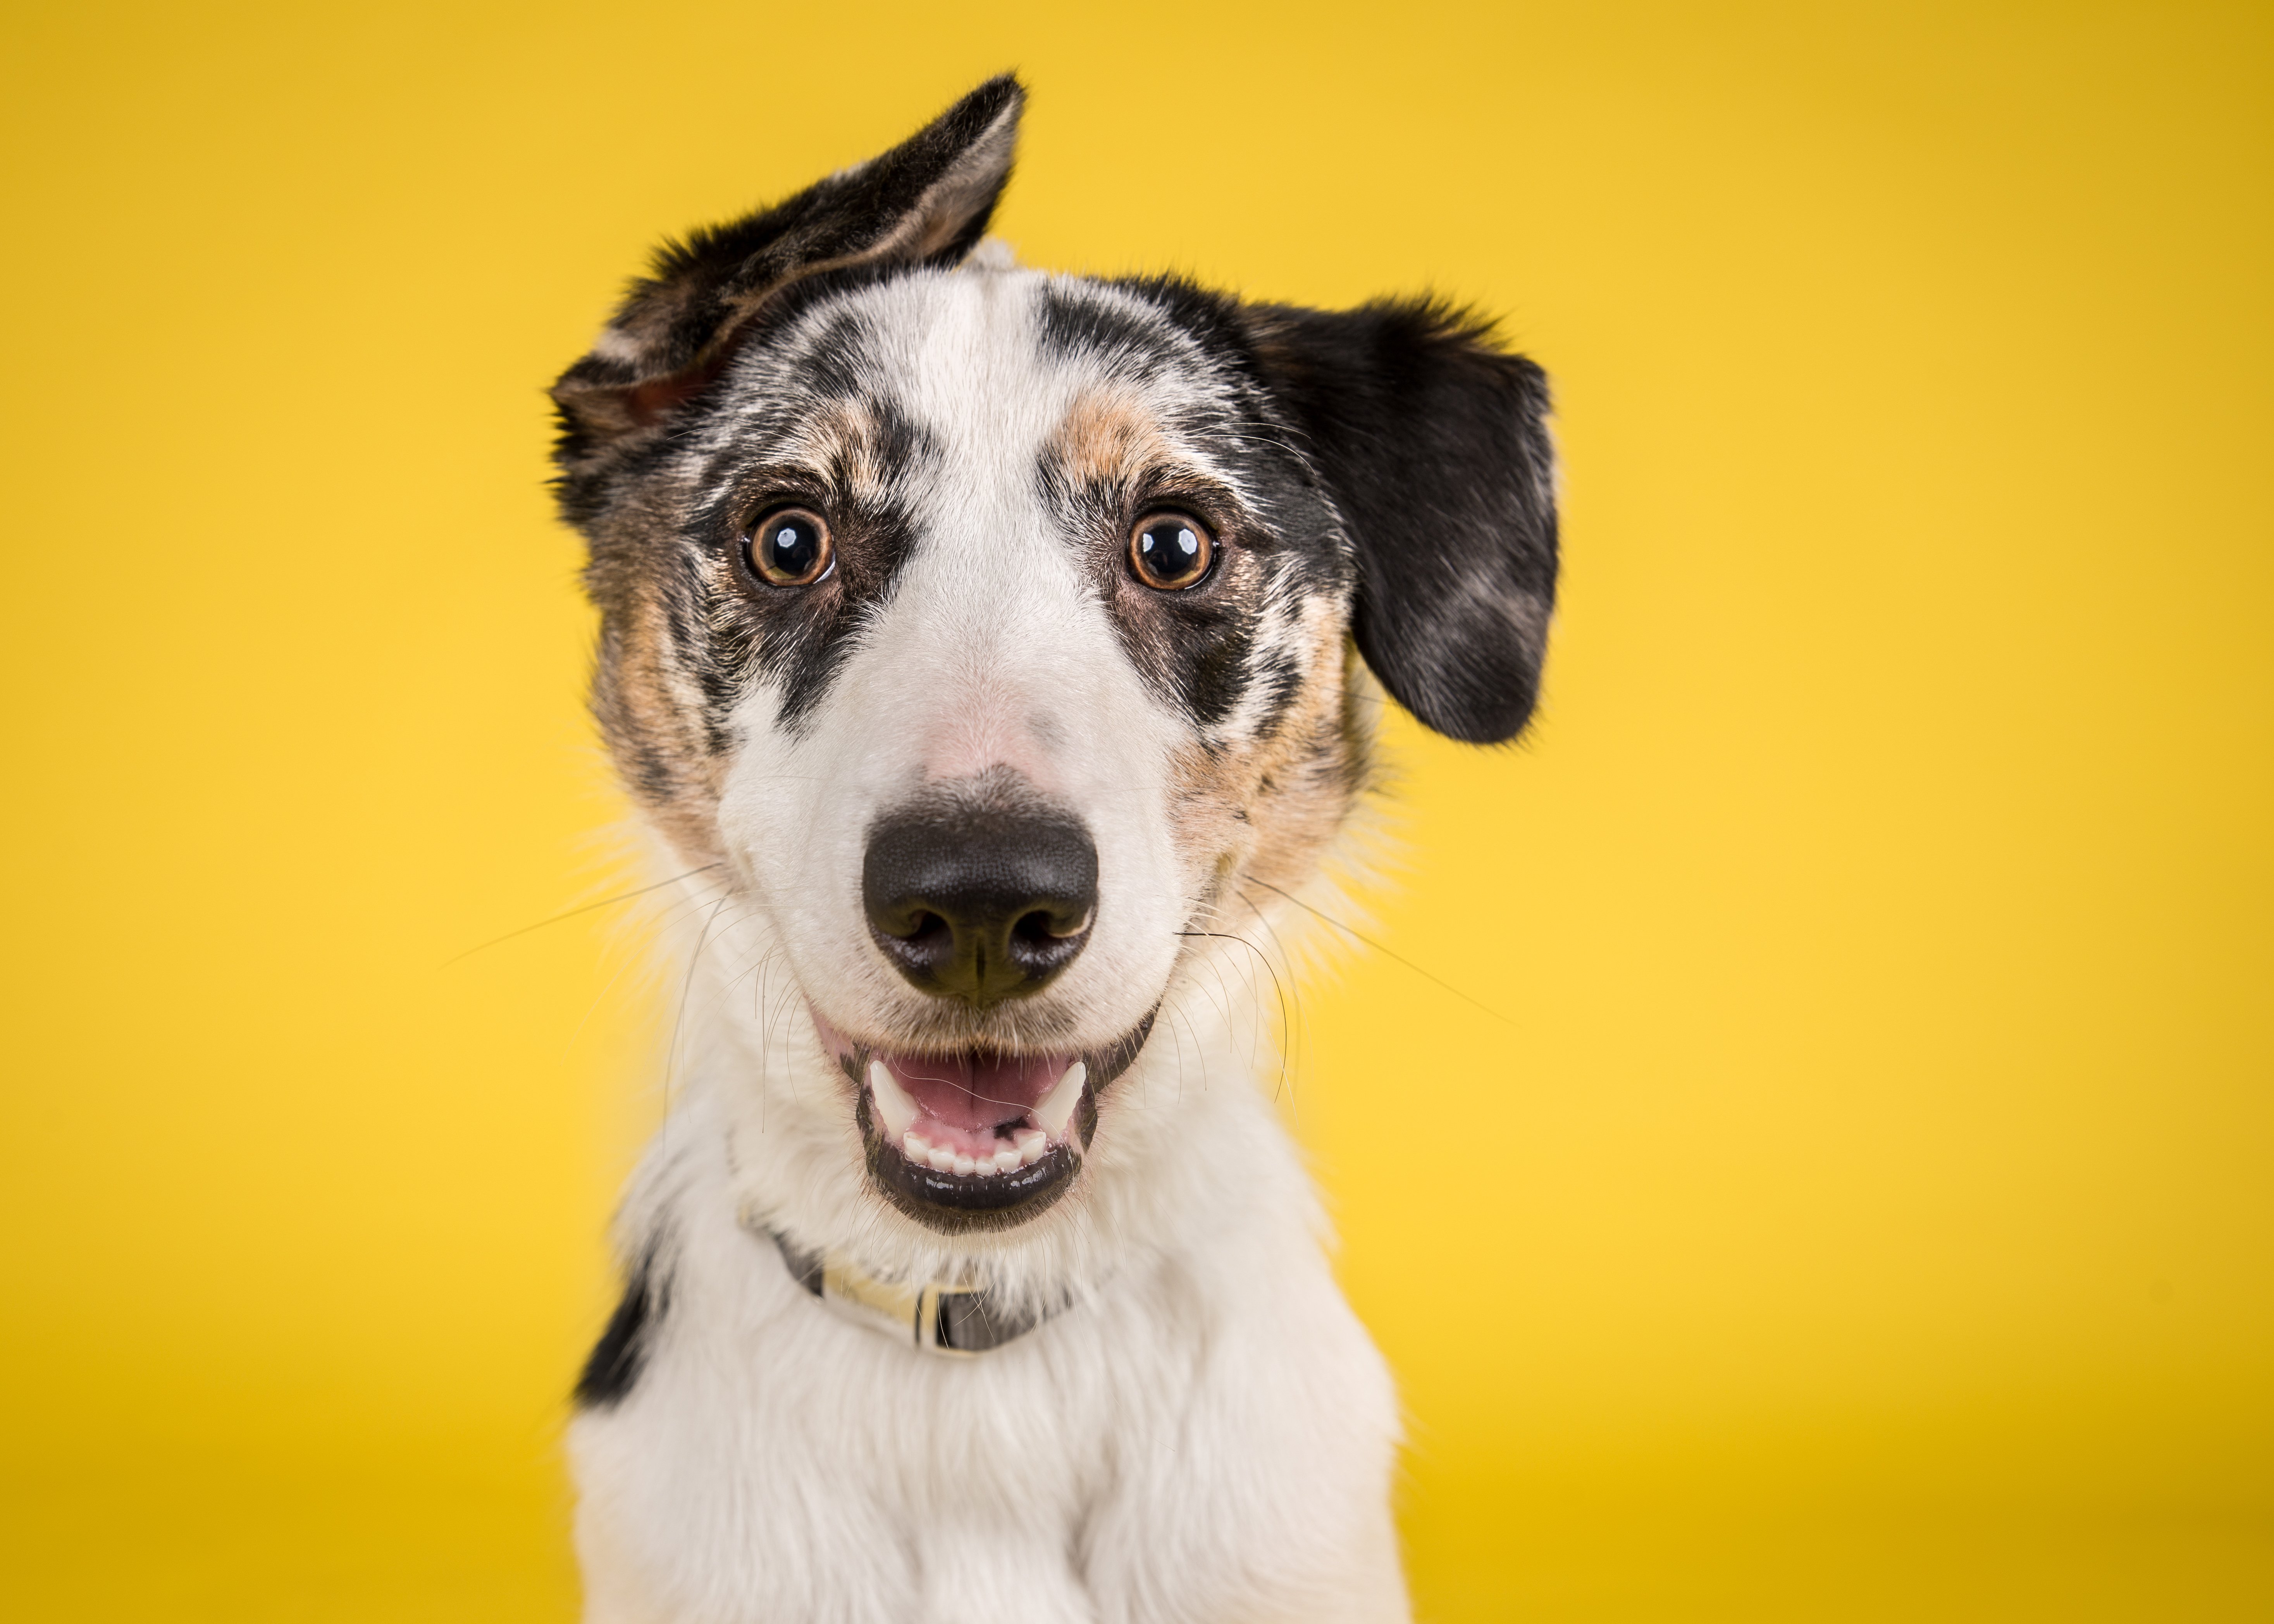 Perro con la boca abierta. Fuente: Shutterstock